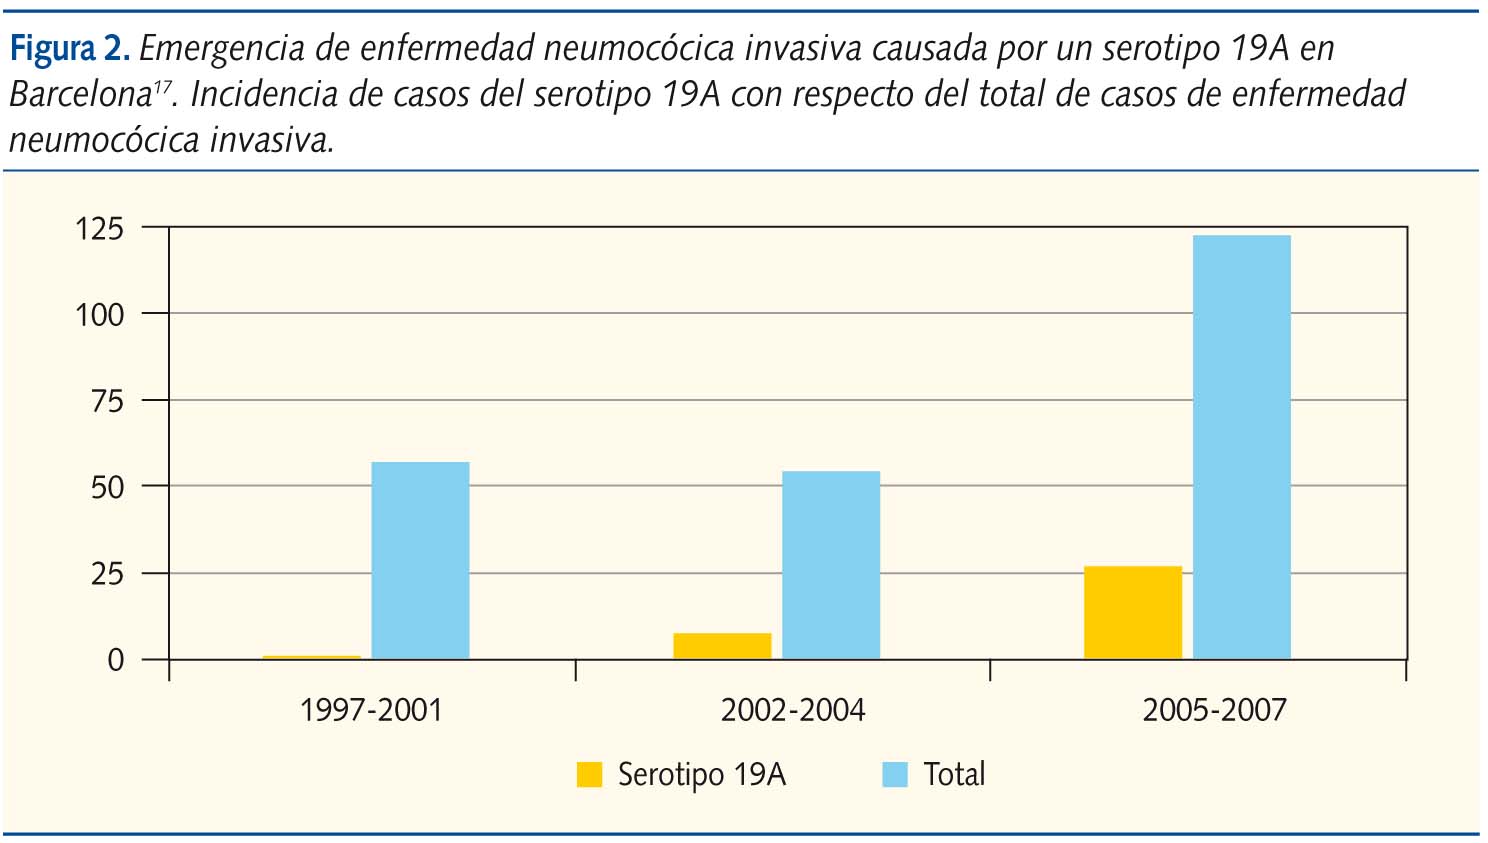 Figura 2. Emergencia de enfermedad neumocócica invasiva causada por un serotipo 19A en Barcelona17. Incidencia de casos del serotipo 19A con respecto del total de casos de enfermedad neumocócica invasiva.